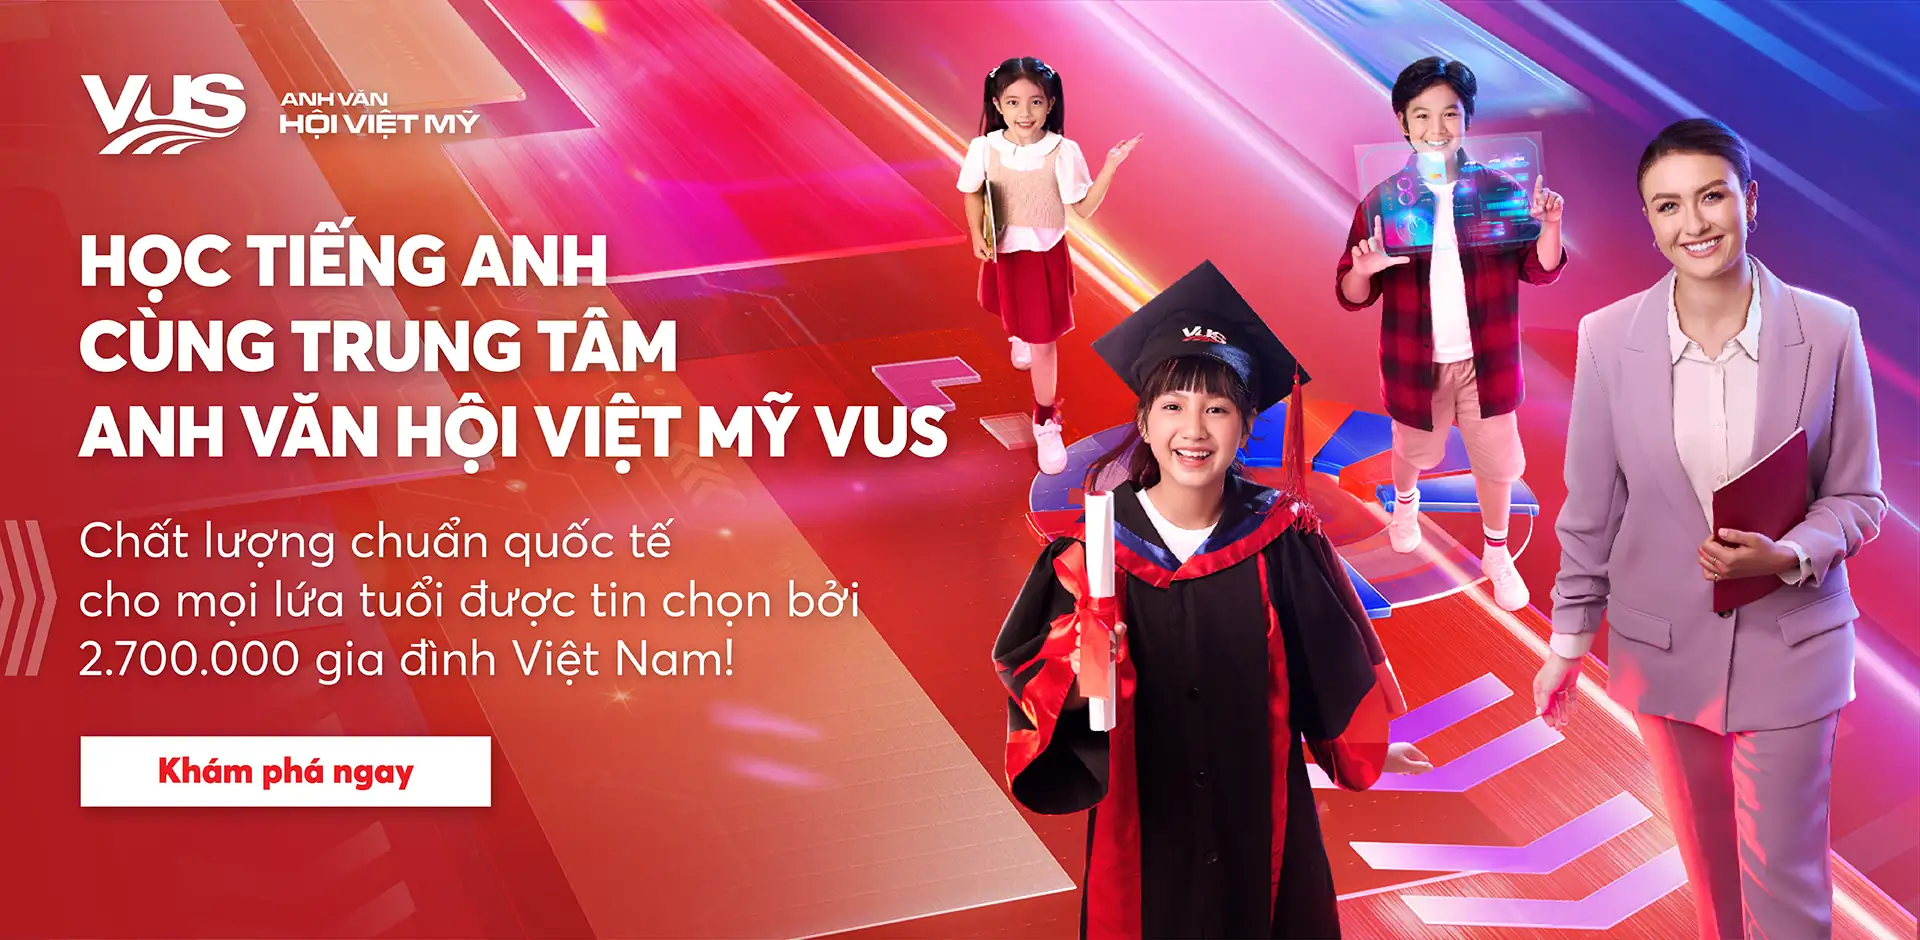 Chất lượng chuẩn quốc tế cho mọi lứa tuổi được chọn bởi 2.700.000 gia đình Việt Nam